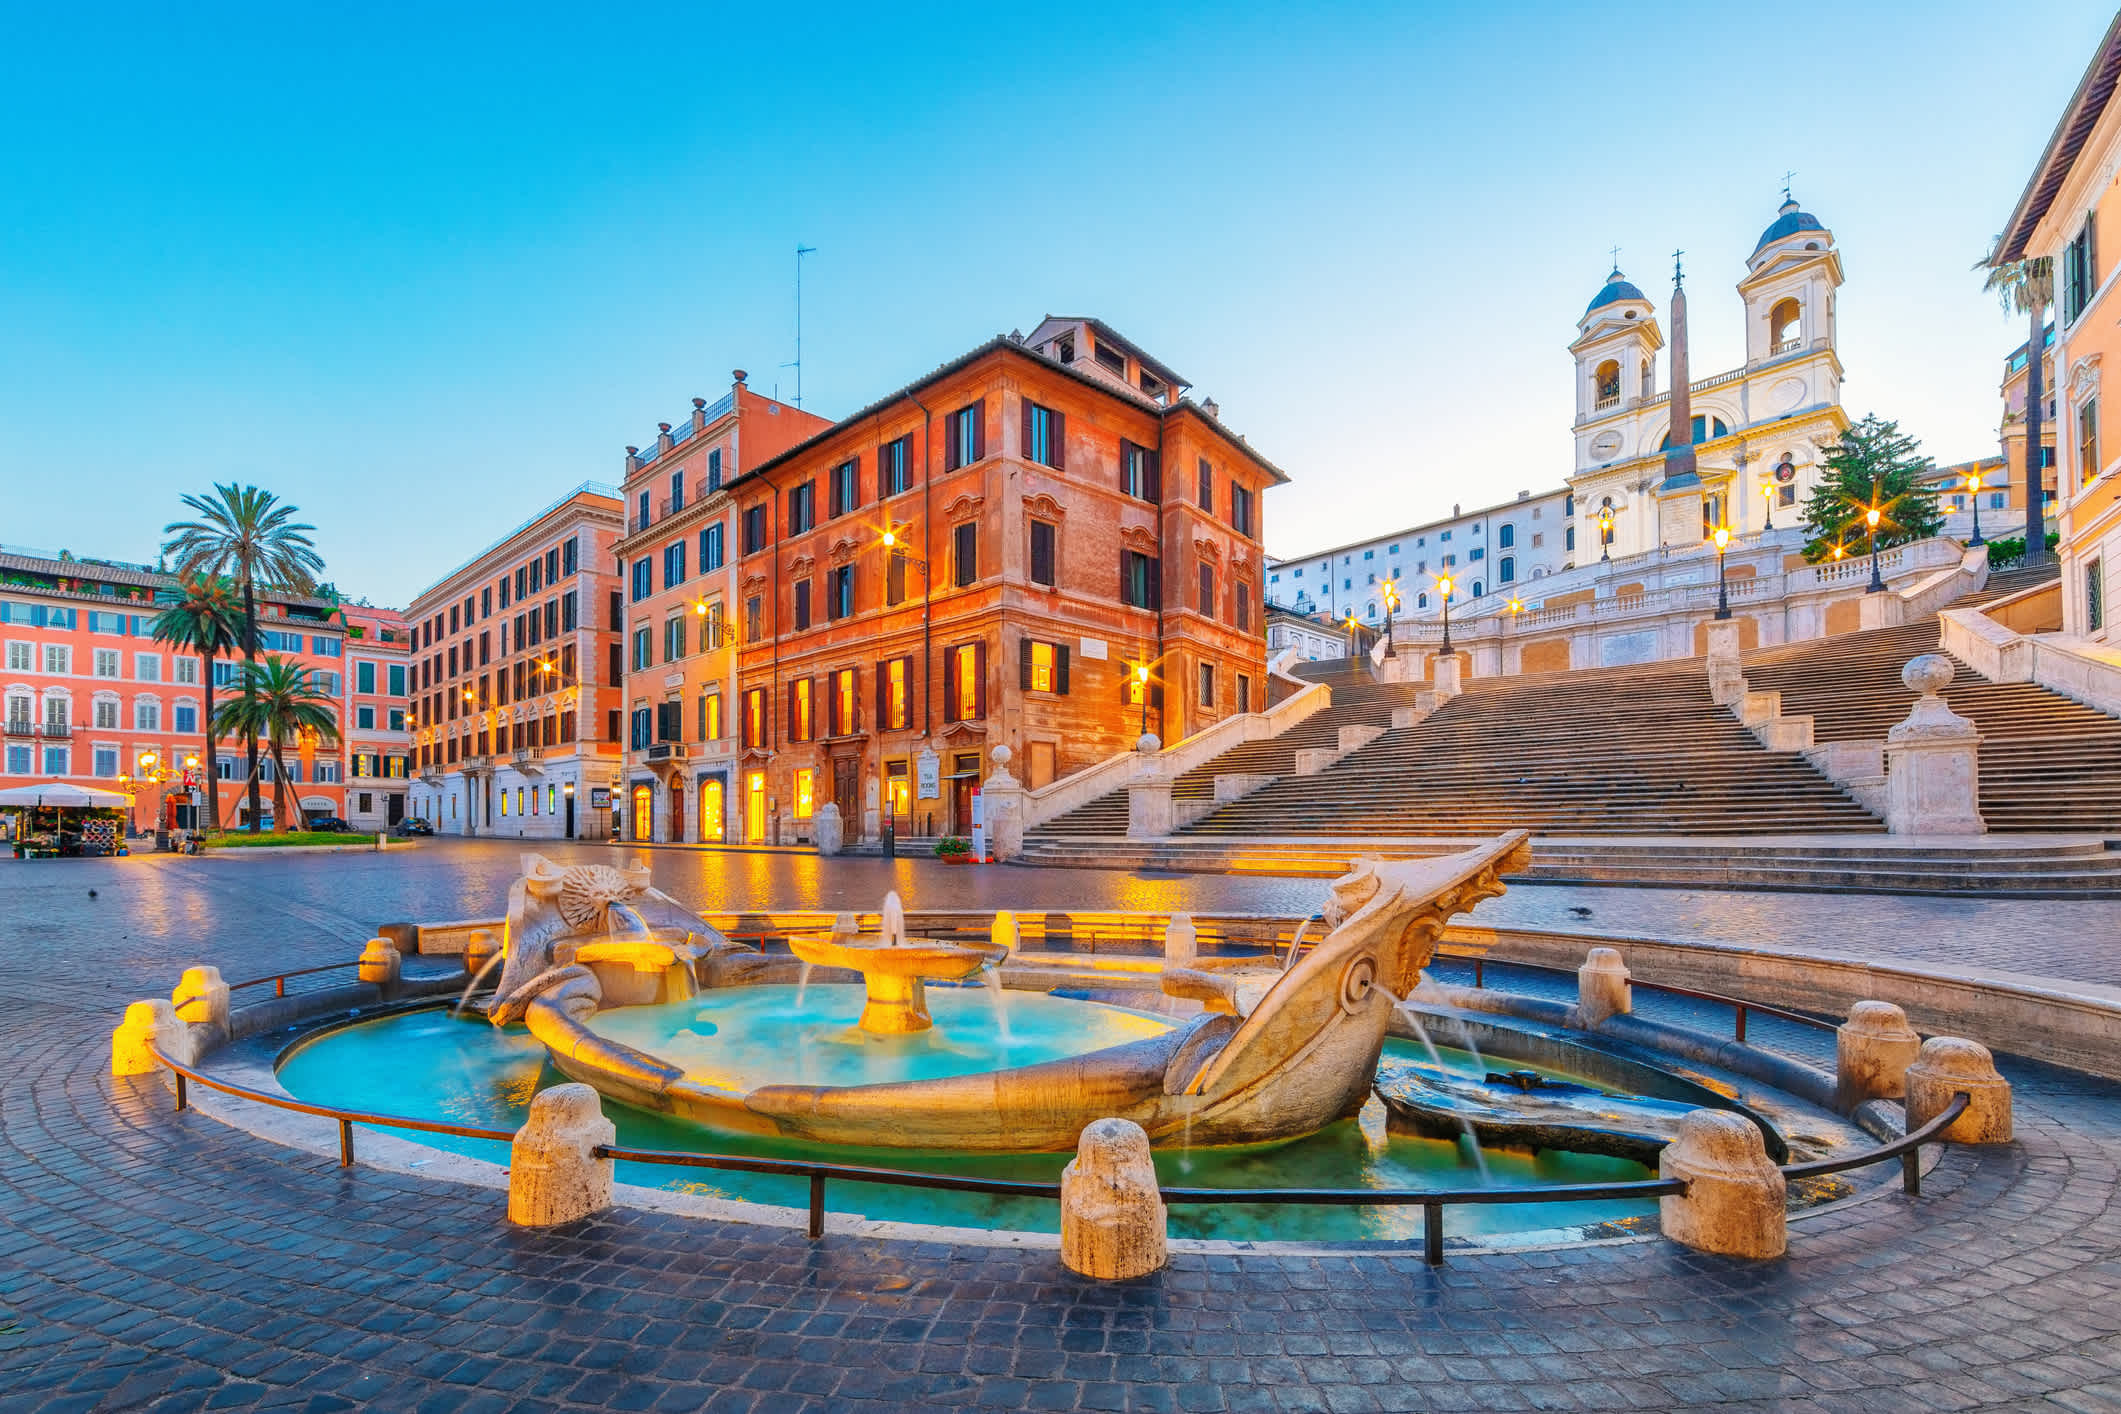 Baraccia-Brunnen und Spanische Treppe auf dem Spanischen Platz, Rom, Italien.